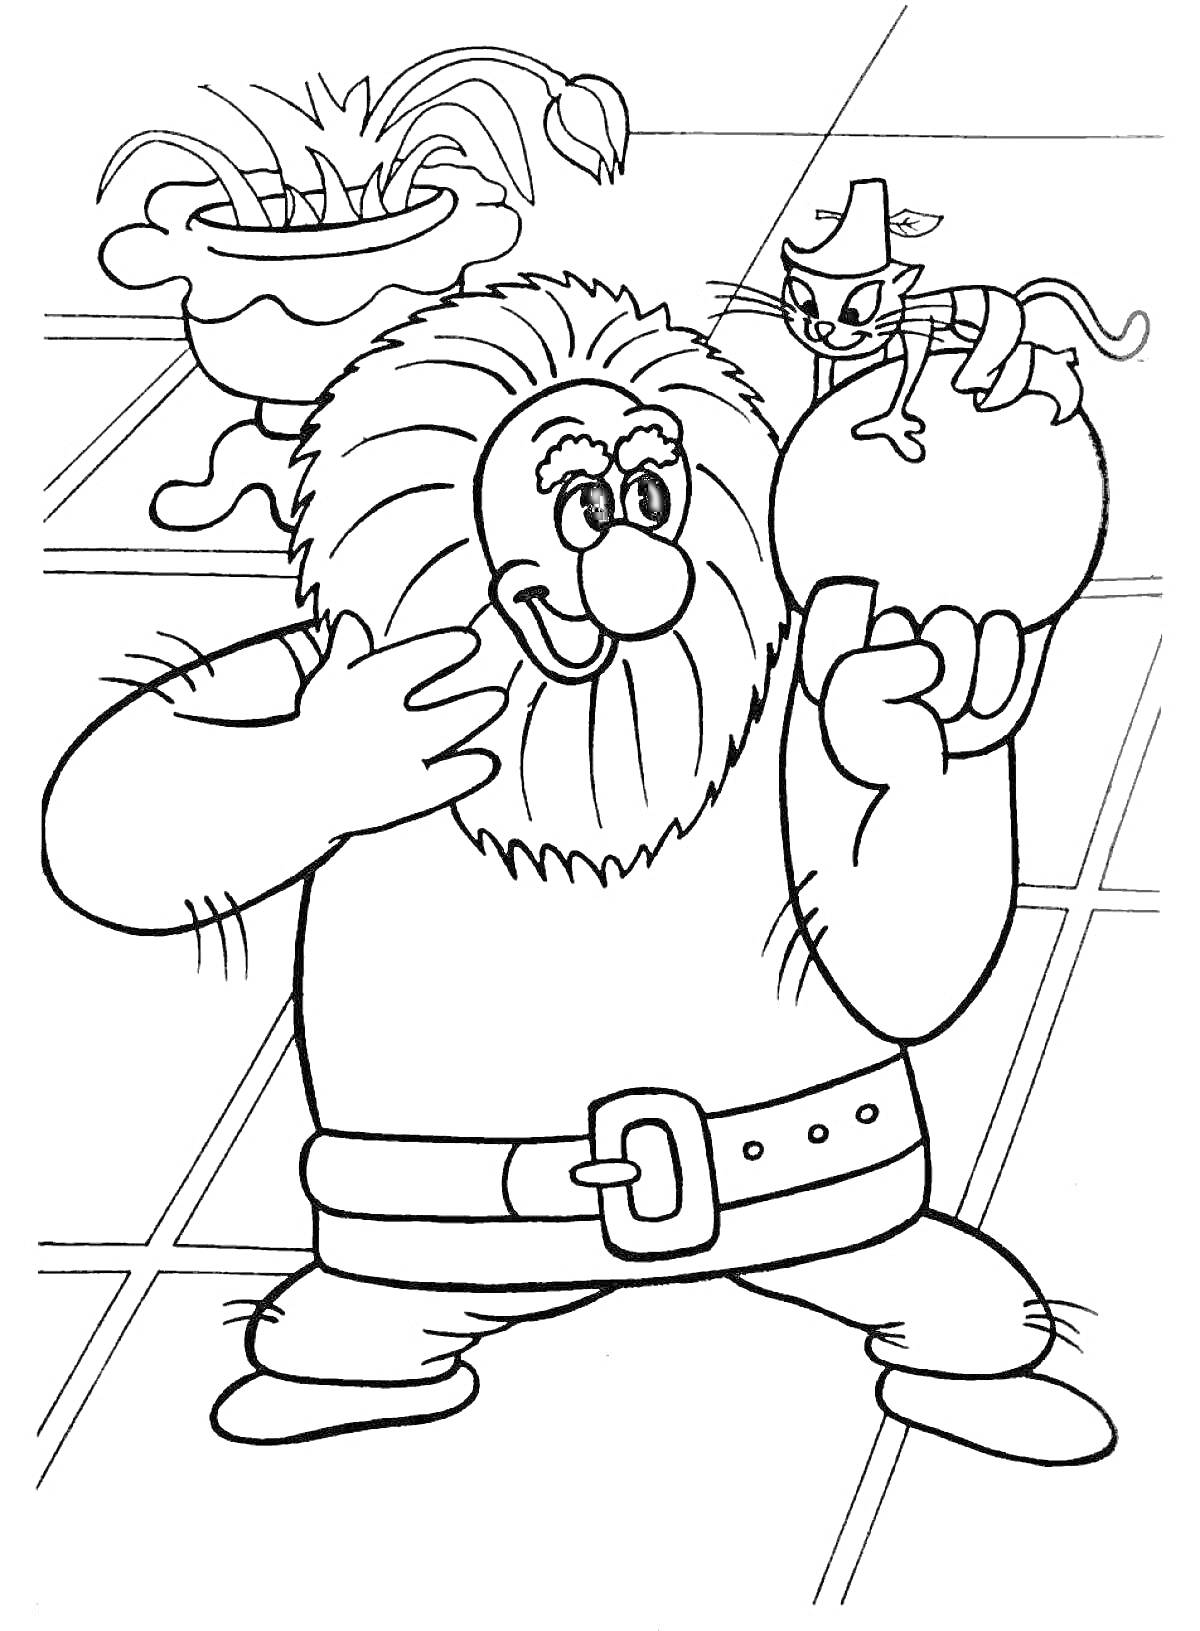 Раскраска Озорной Кот в сапогах на яблоке и улыбающийся человек с бородой, высокий горшок с растением на заднем плане